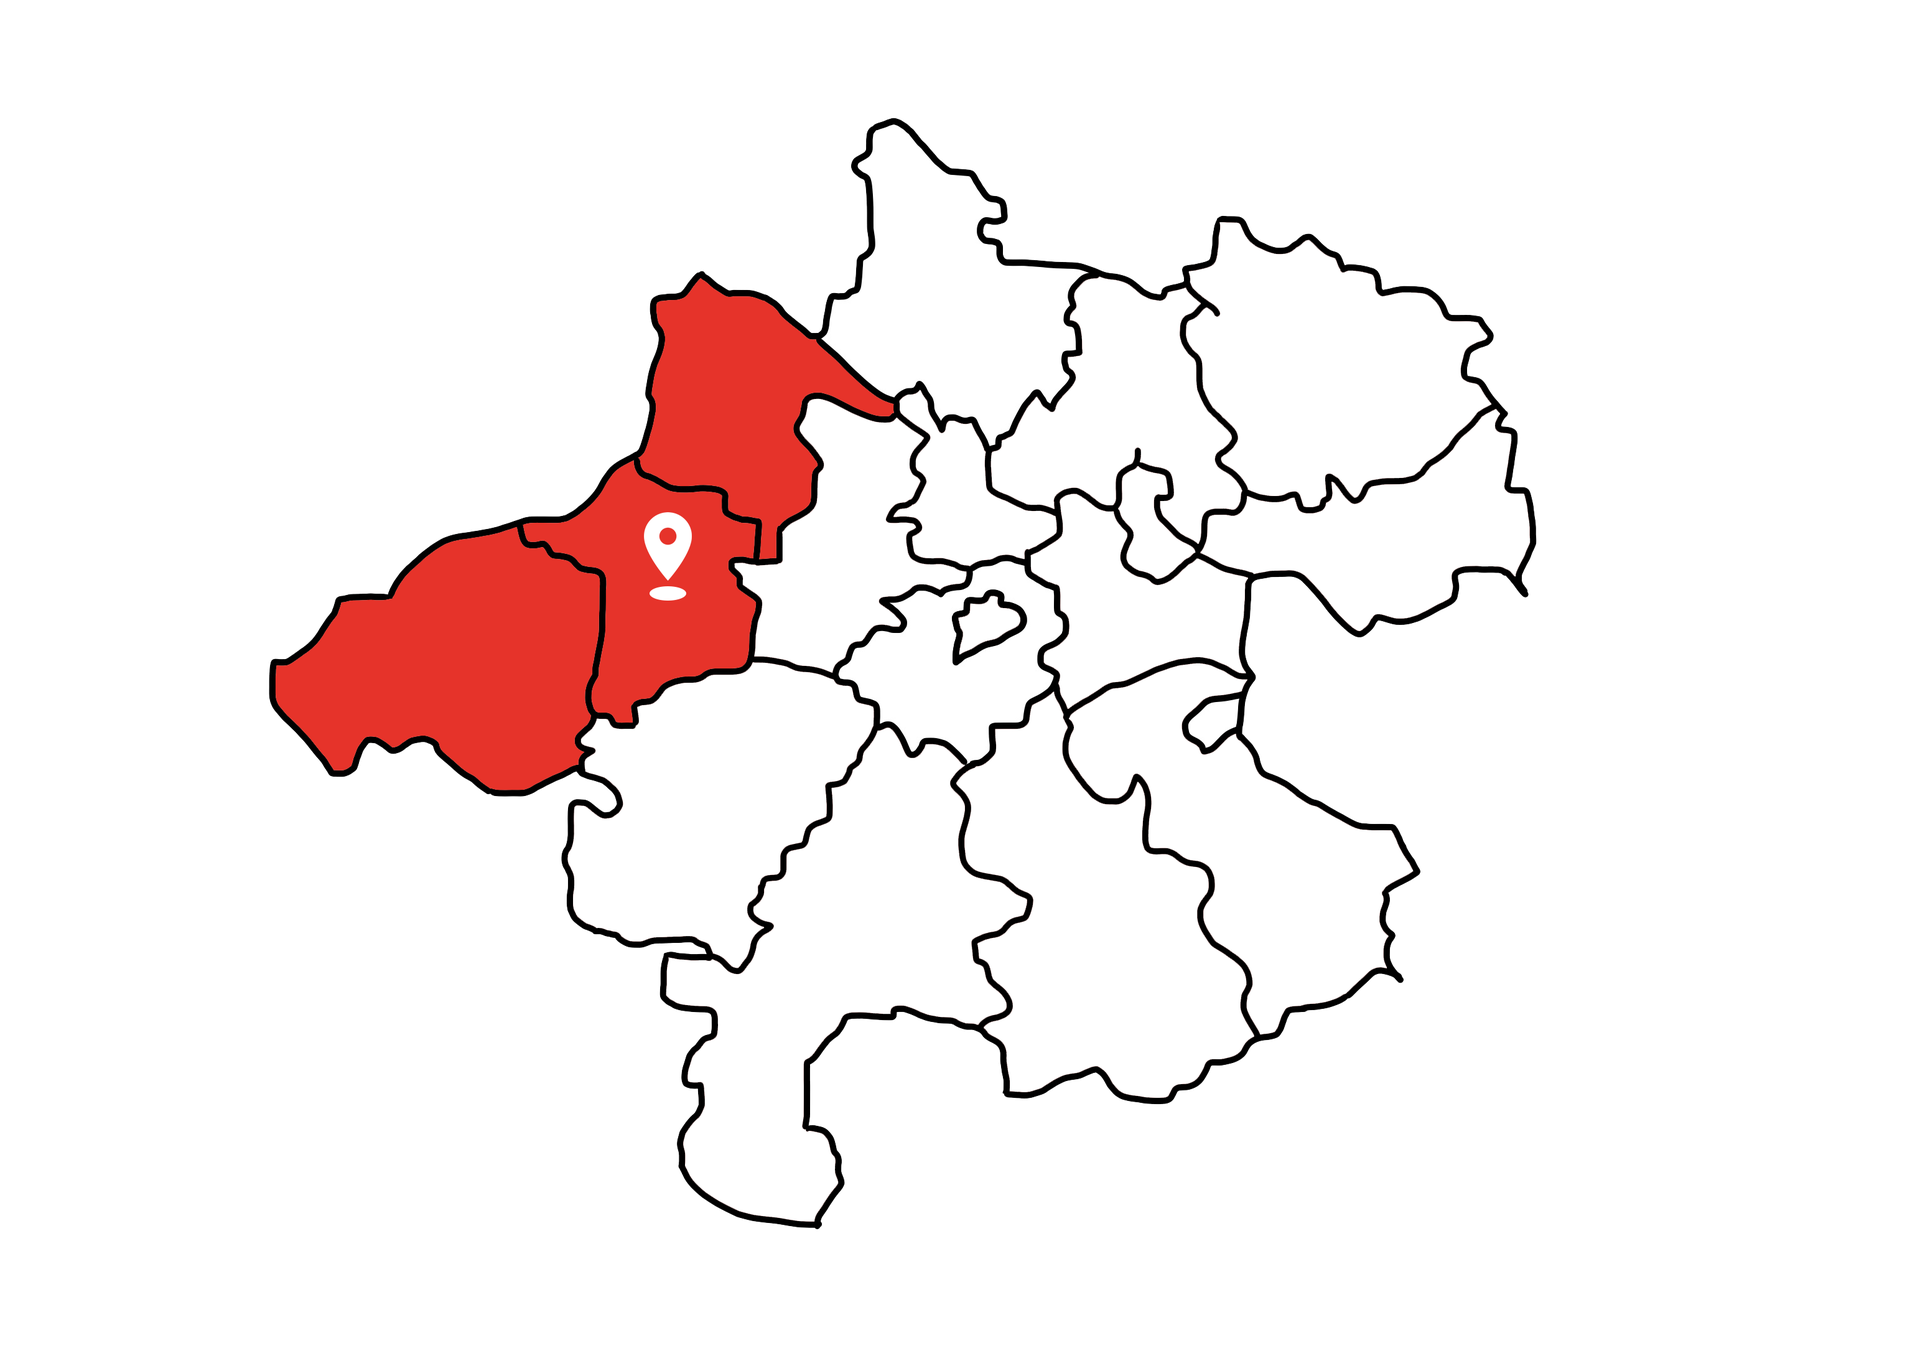 Eine Landkarte die Oberösterreich zeigt. Die Bezirke Schärding, Ried und Braunau sind rot markiert. Die restlichen Bezirke sind weiß.